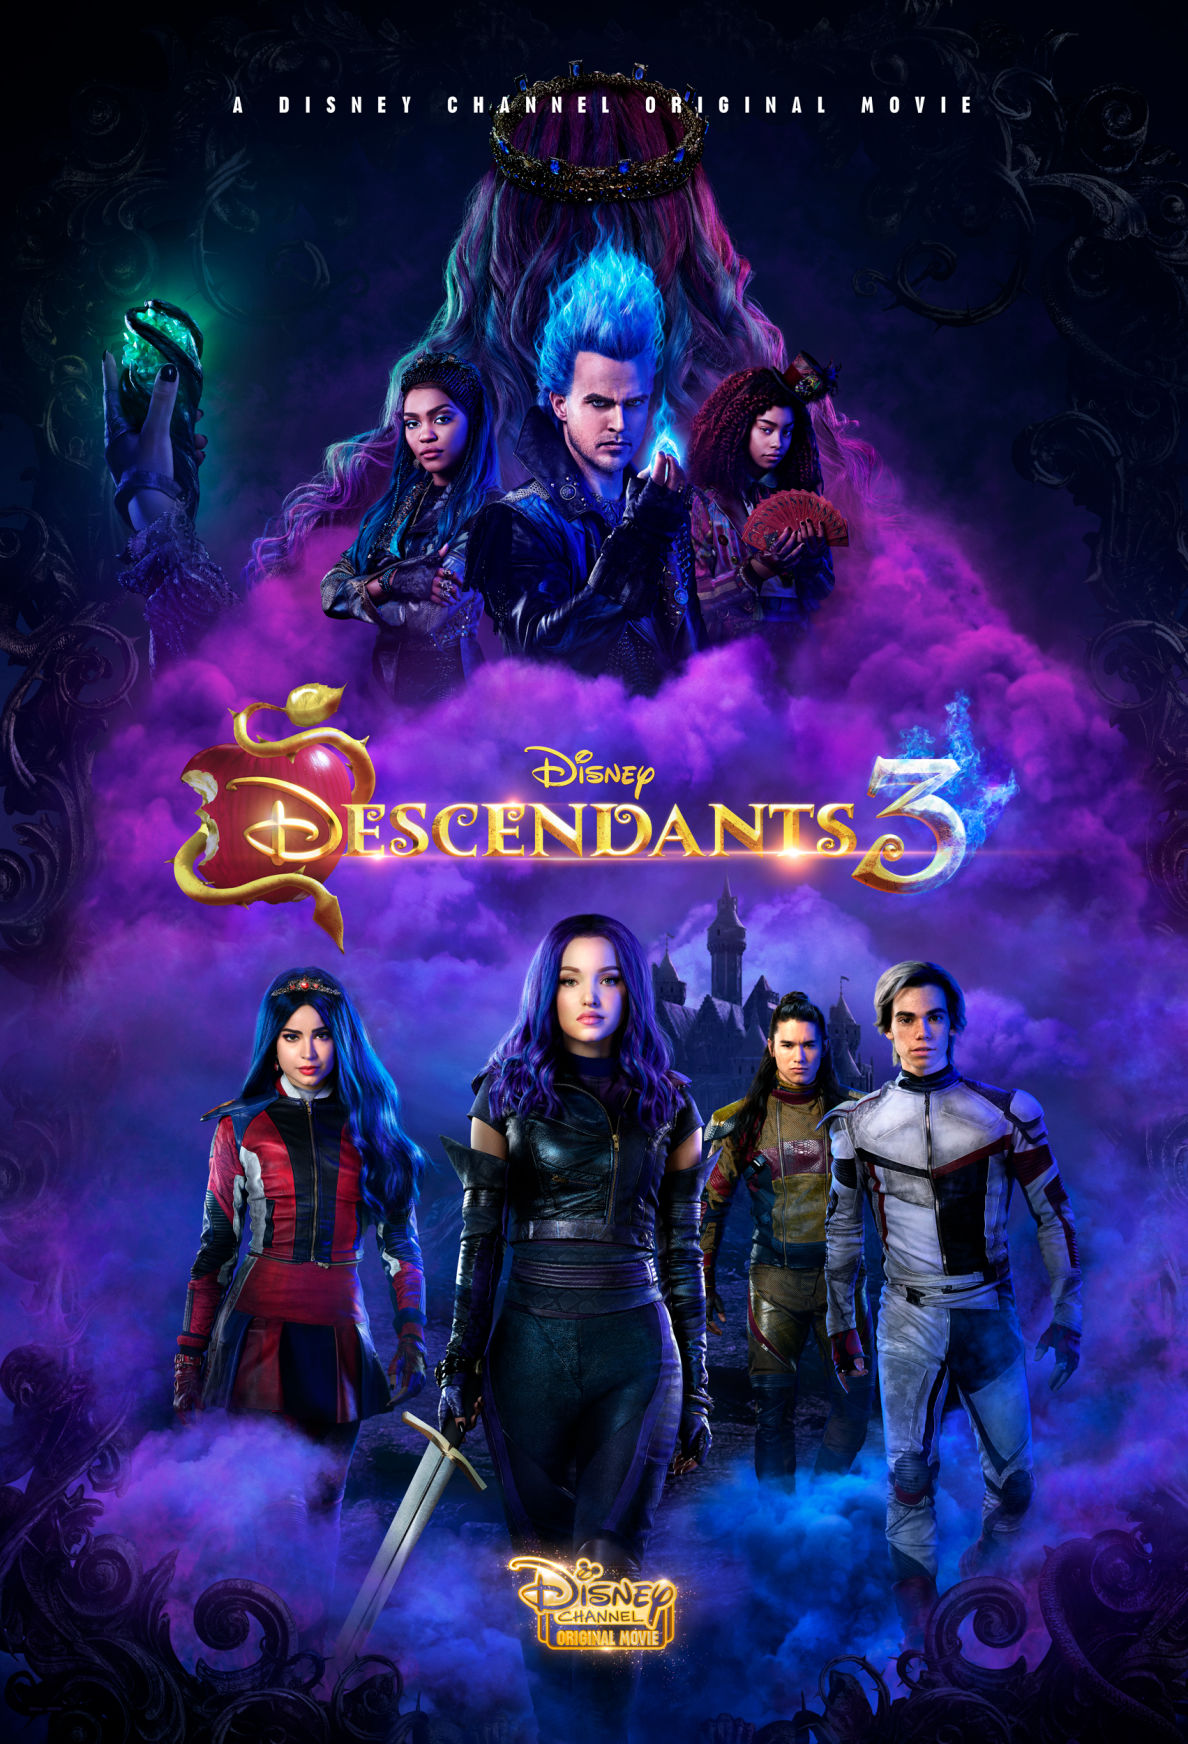 ดูหนังออนไลน์ฟรี Descendants 3 รวมพลทายาทตัวร้าย 3 (2019) พากย์ไทย